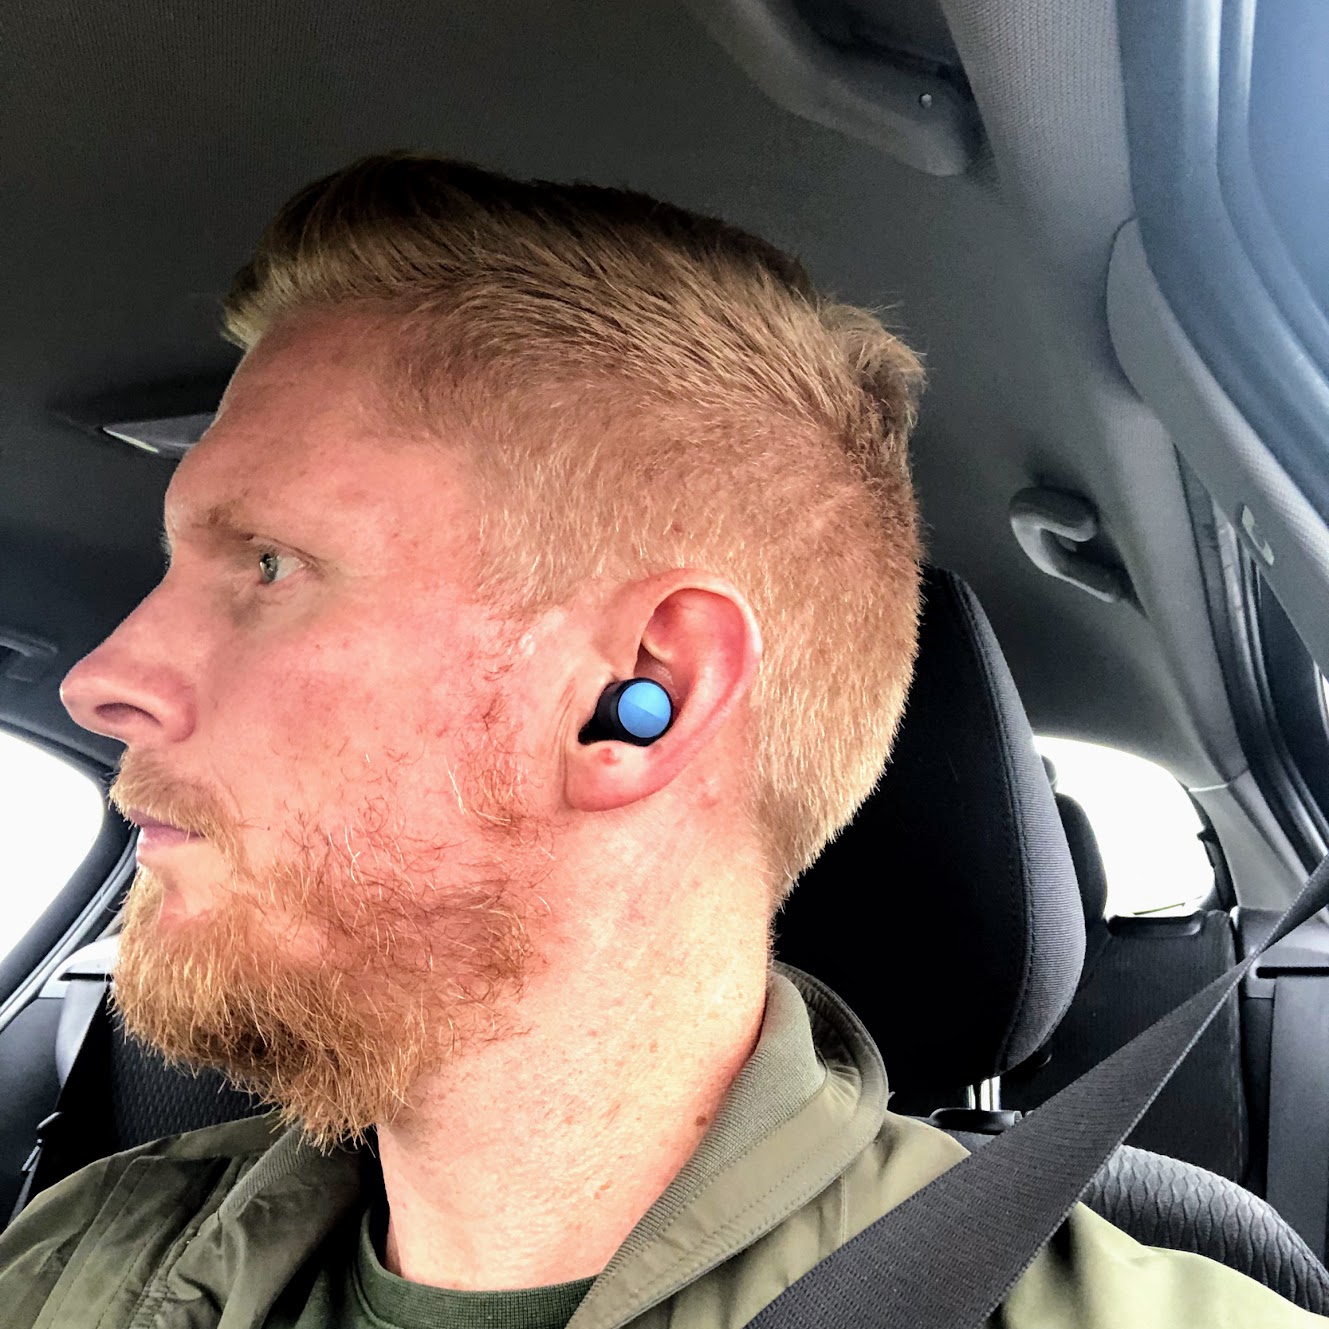 test af Sackit ROCKit headphones høretelefoner test anmeldelse af erfaring batteritid lydkvalitet earbuds sportsheadset til løb crossfit